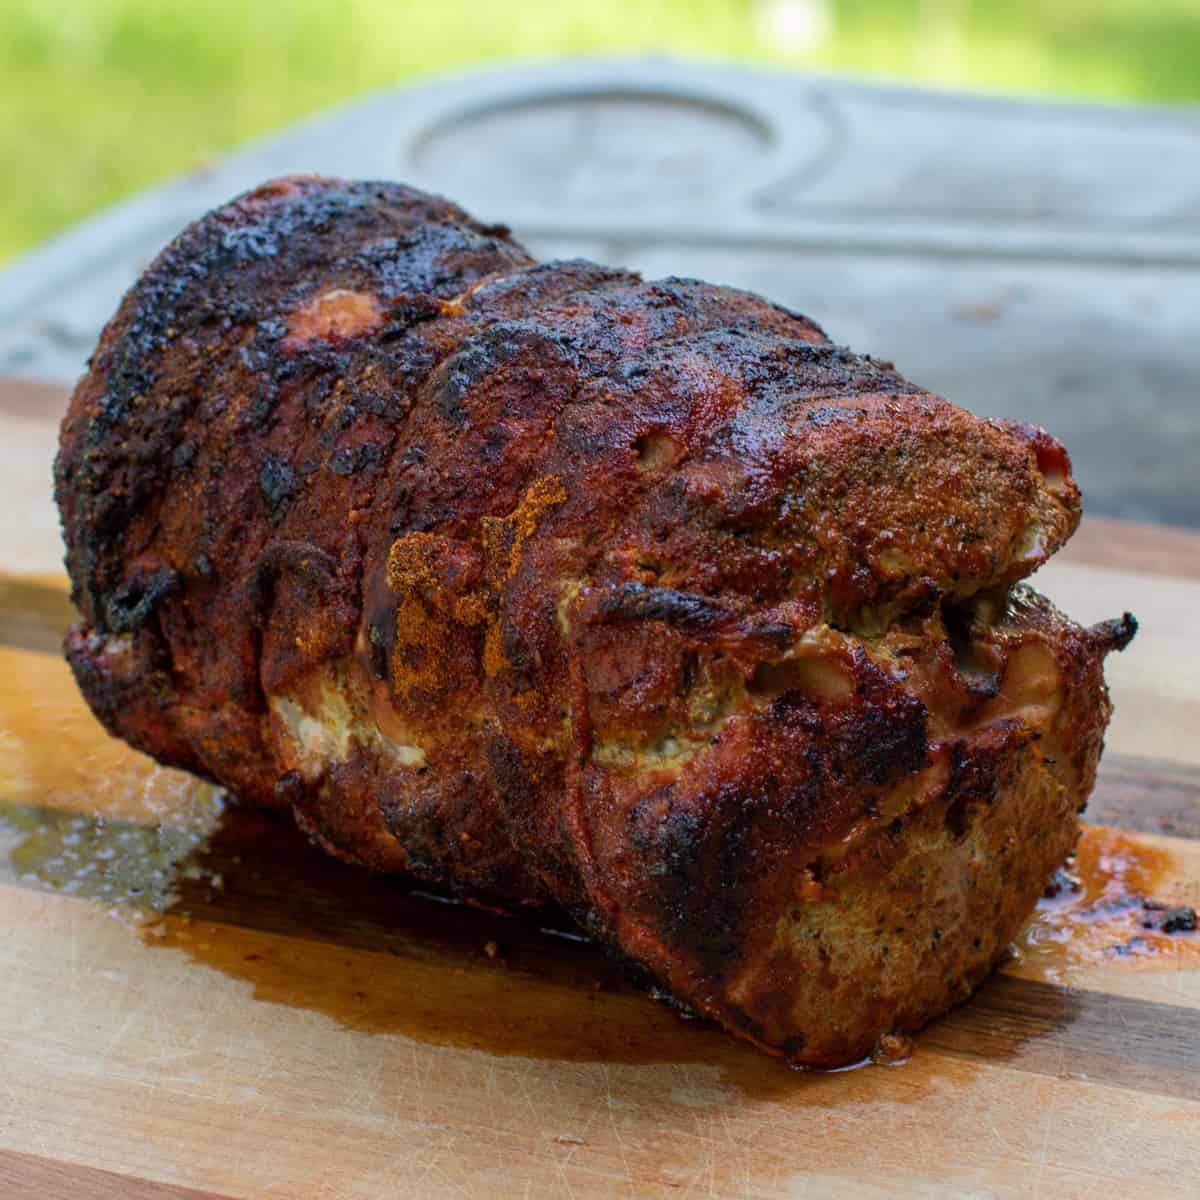 Grilled pork roast resting on a cutting board.